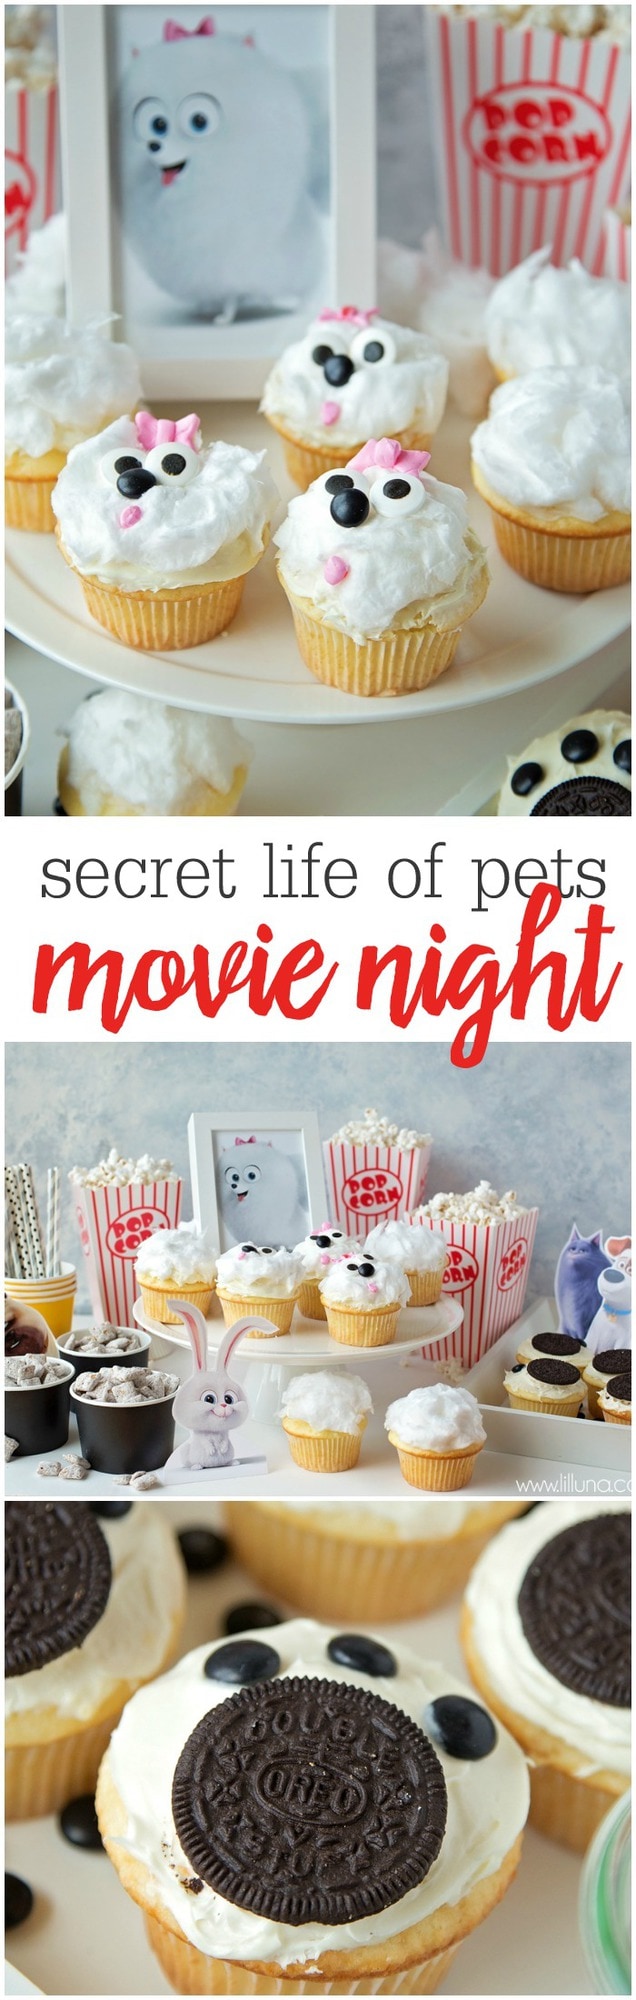 《宠物的秘密生活》电影之夜的创意，包括Gidget纸杯蛋糕、Puppy Chow和Paw Print纸杯蛋糕。